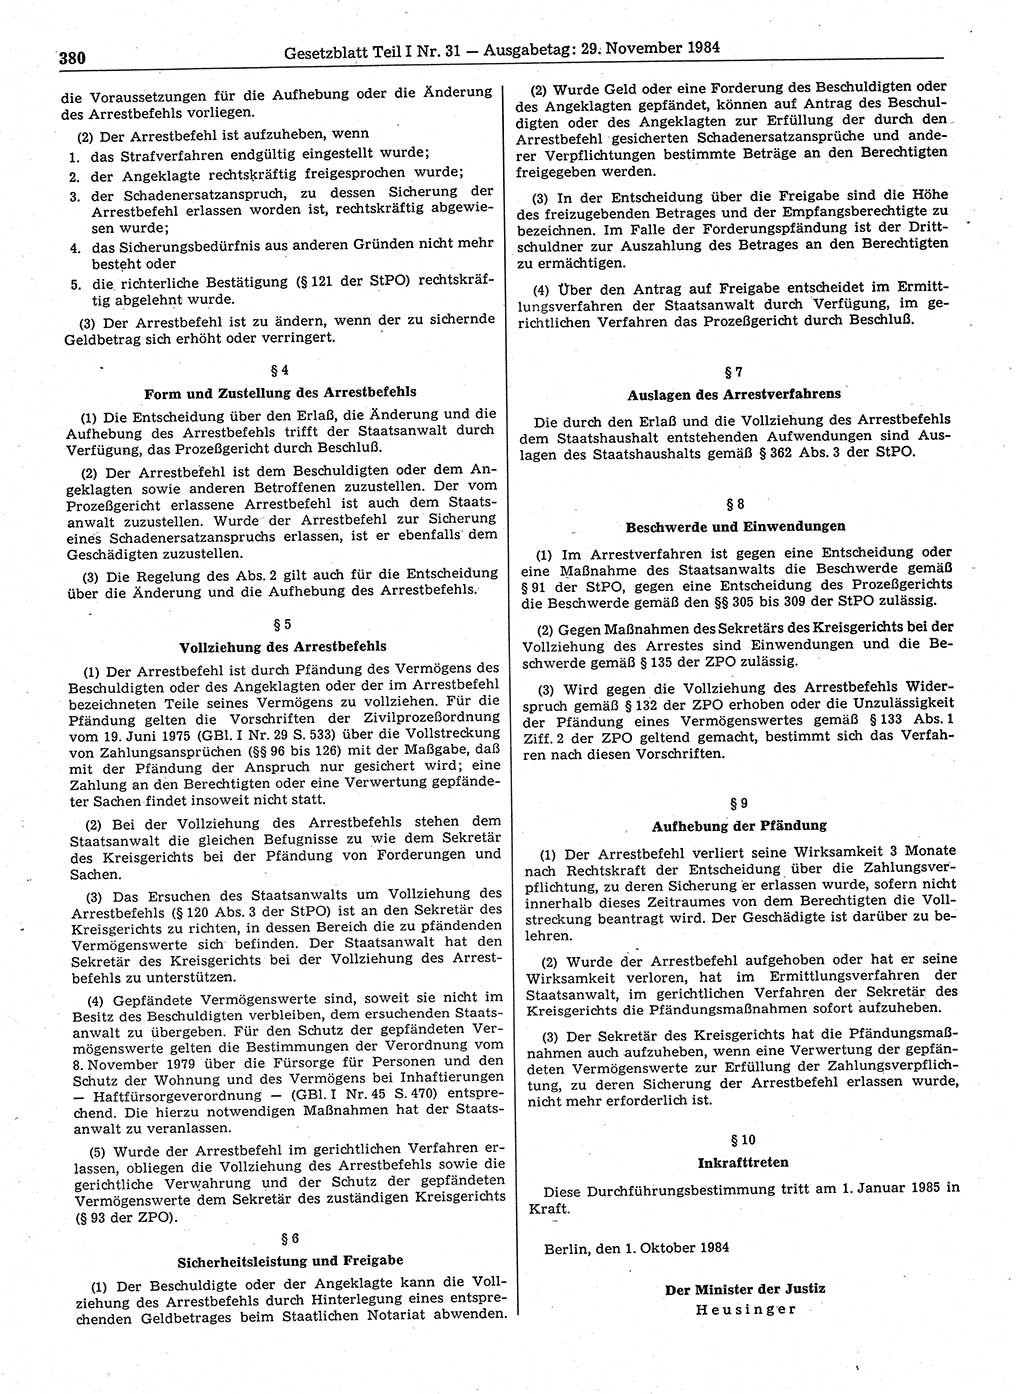 Gesetzblatt (GBl.) der Deutschen Demokratischen Republik (DDR) Teil Ⅰ 1984, Seite 380 (GBl. DDR Ⅰ 1984, S. 380)